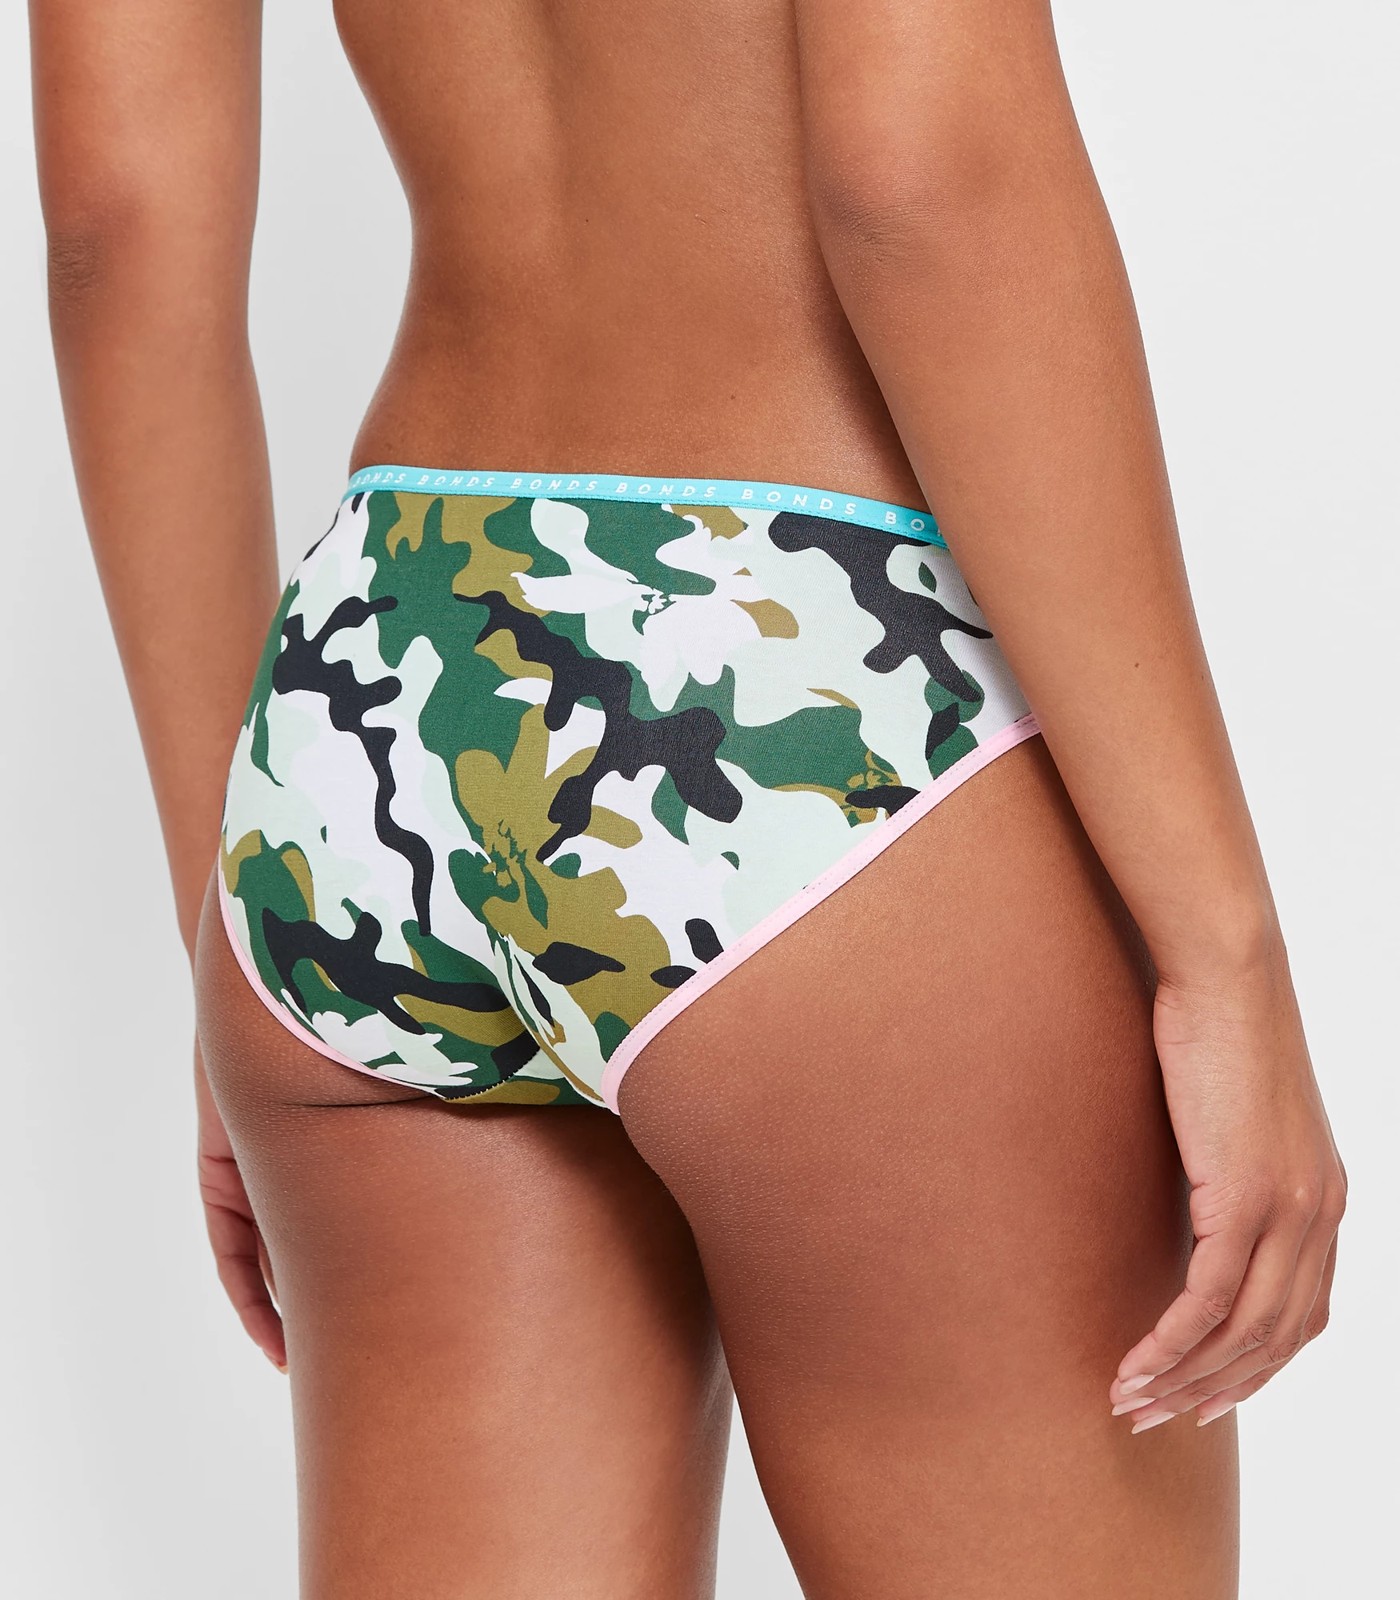 Camouflage Green Camo Hipster Women's Underwear Briefs Soft Cotton